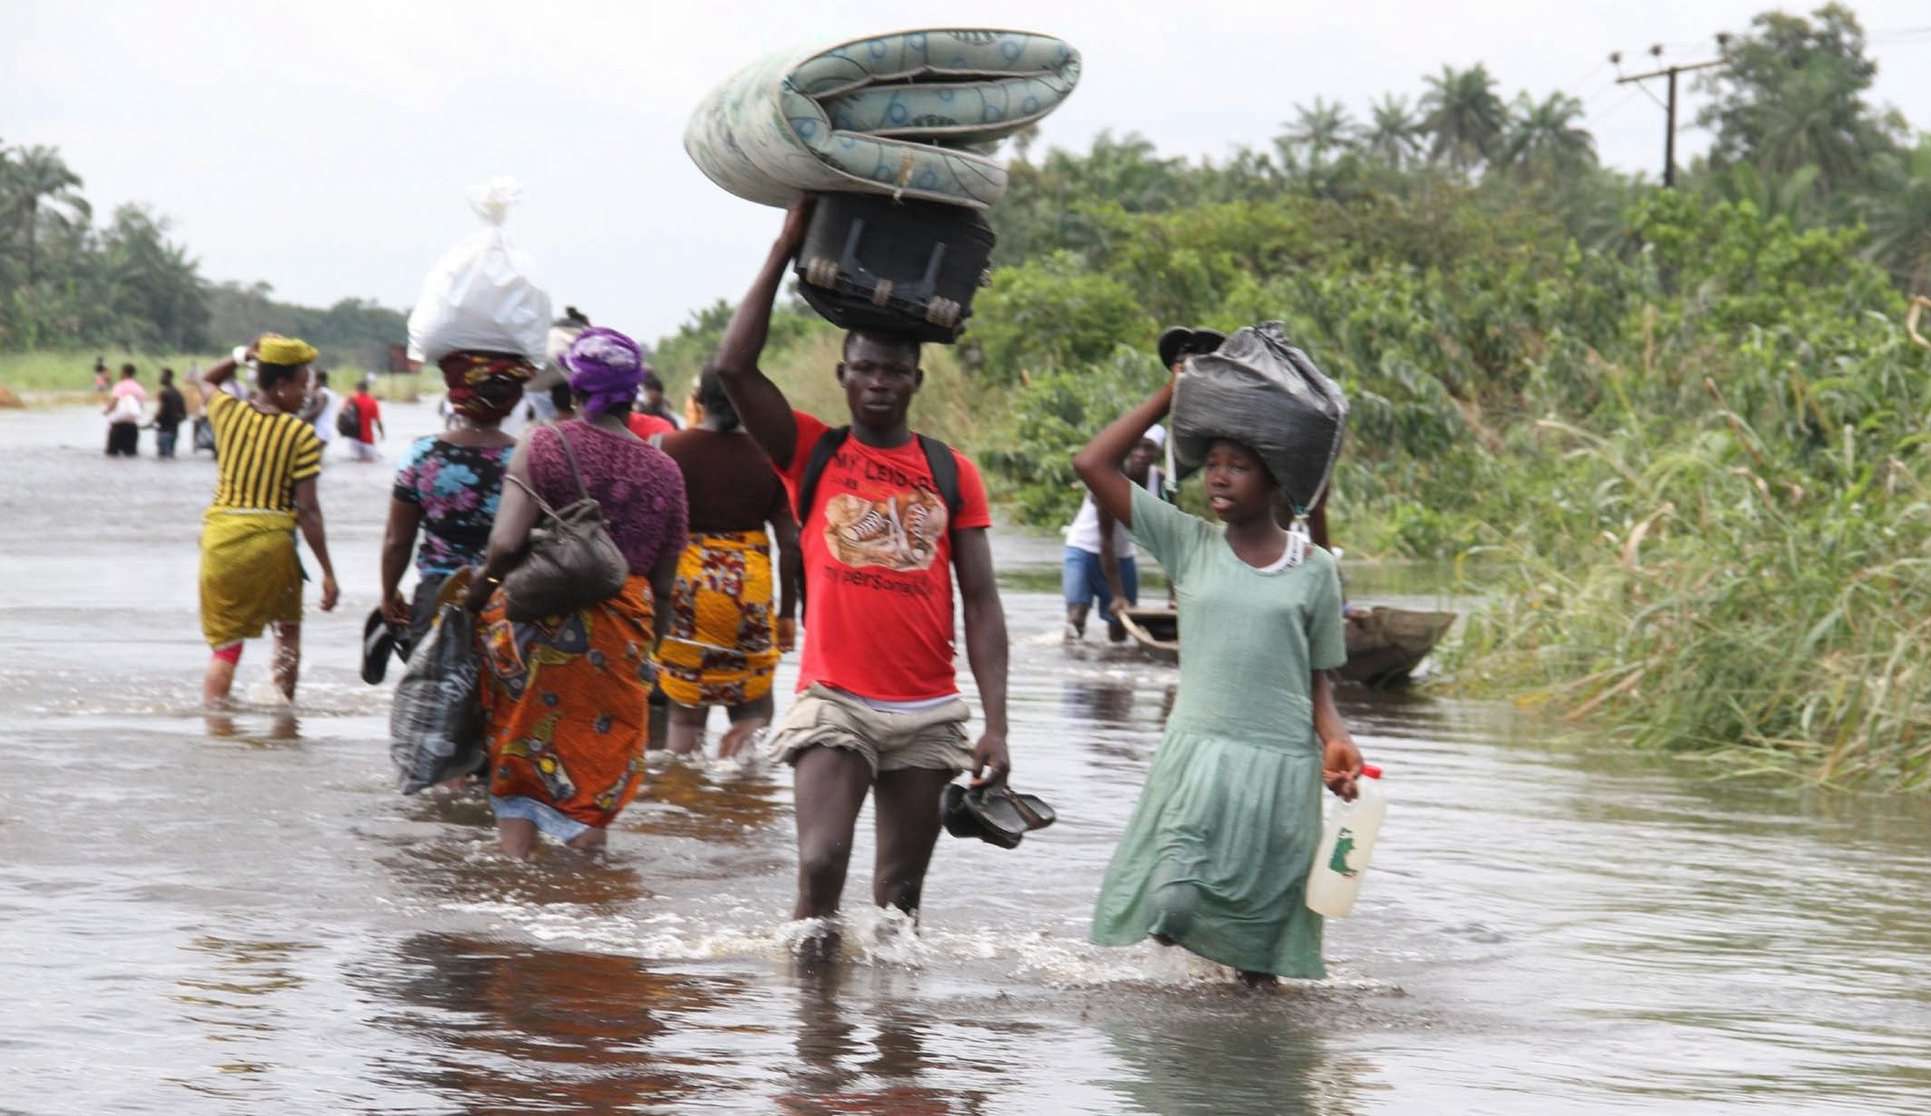  Inundações na Nigéria deixam mais de 600 mortos e 2 milhões de pessoas afetadas